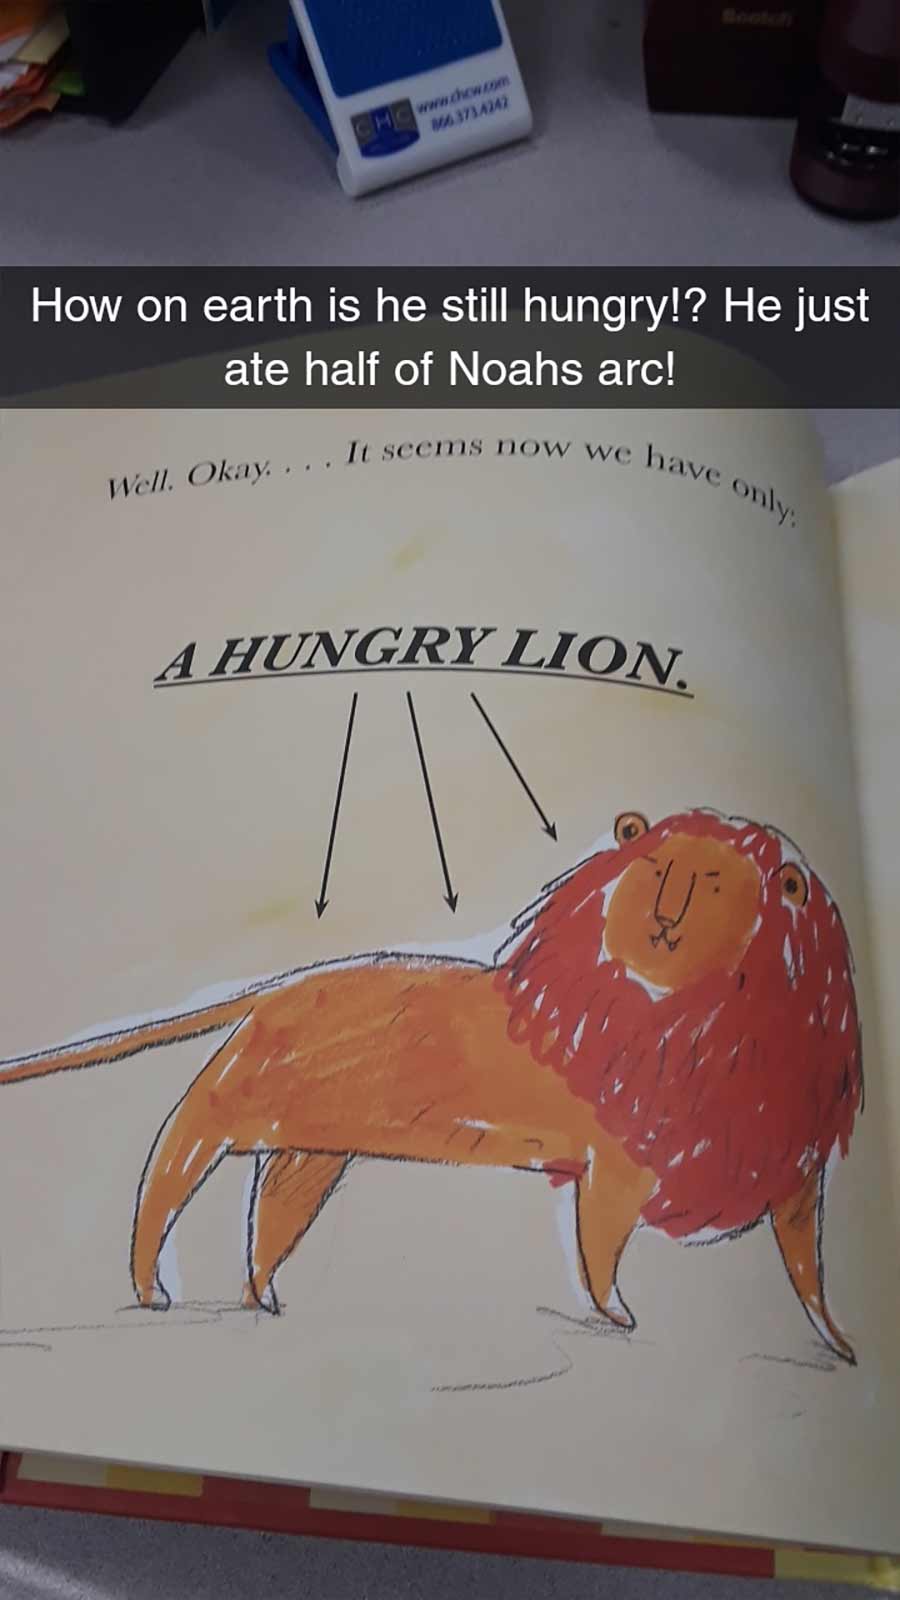 Erwachsene rezensiert Kinderbuch auf erfrischende Art A-Hungry-Lion-or-A-Dwindling-Assortment-of-Animals_08 